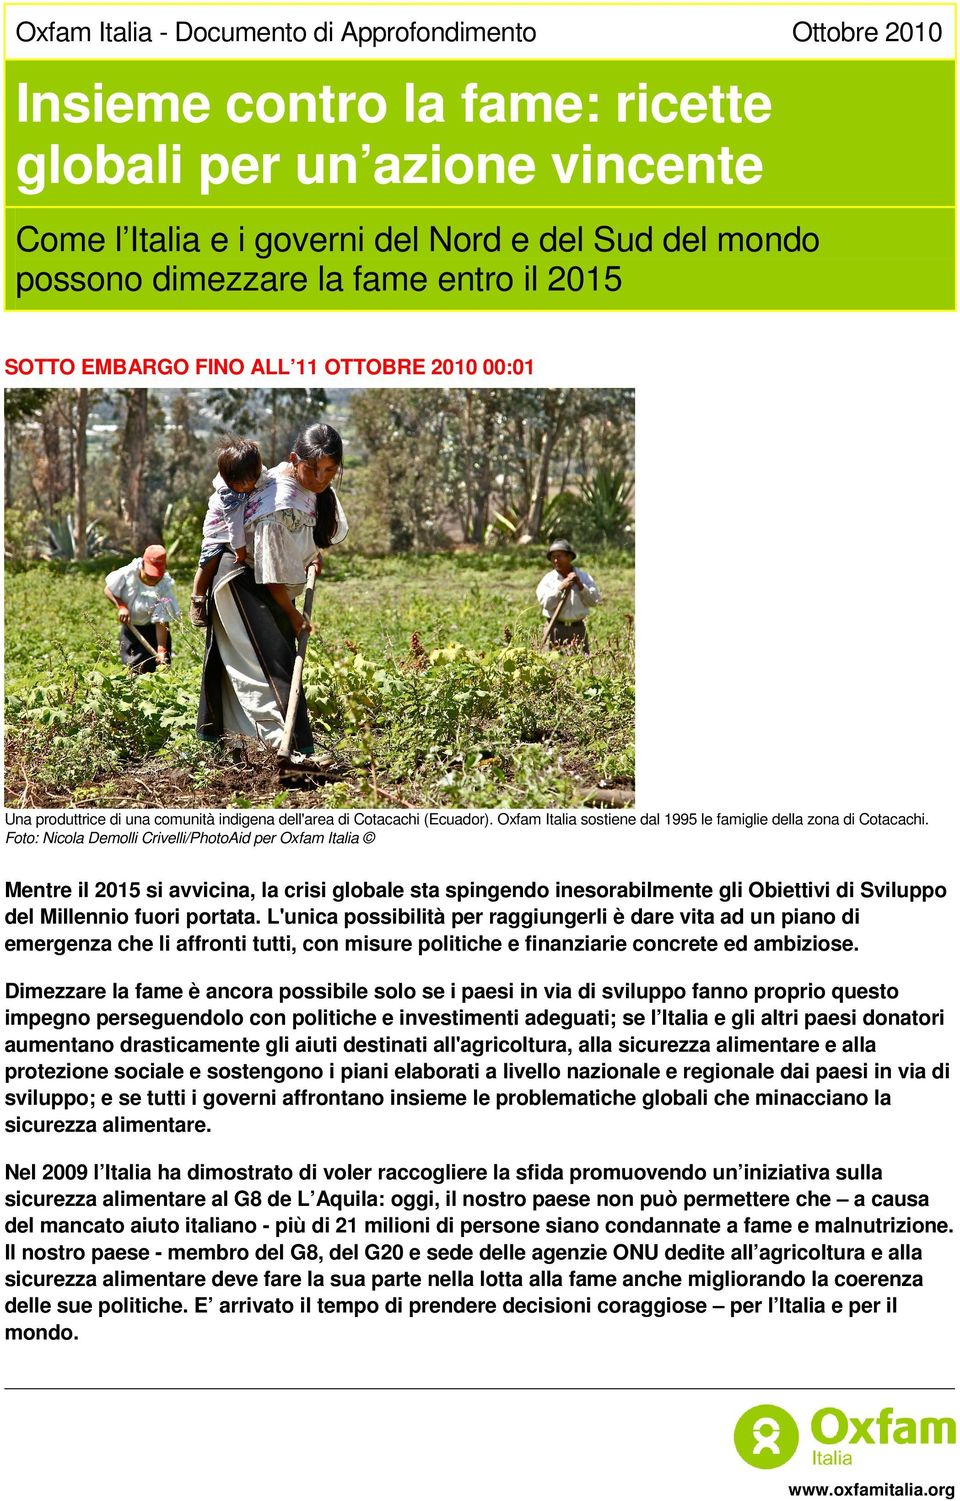 Oxfam Italia sostiene dal 1995 le famiglie della zona di Cotacachi.